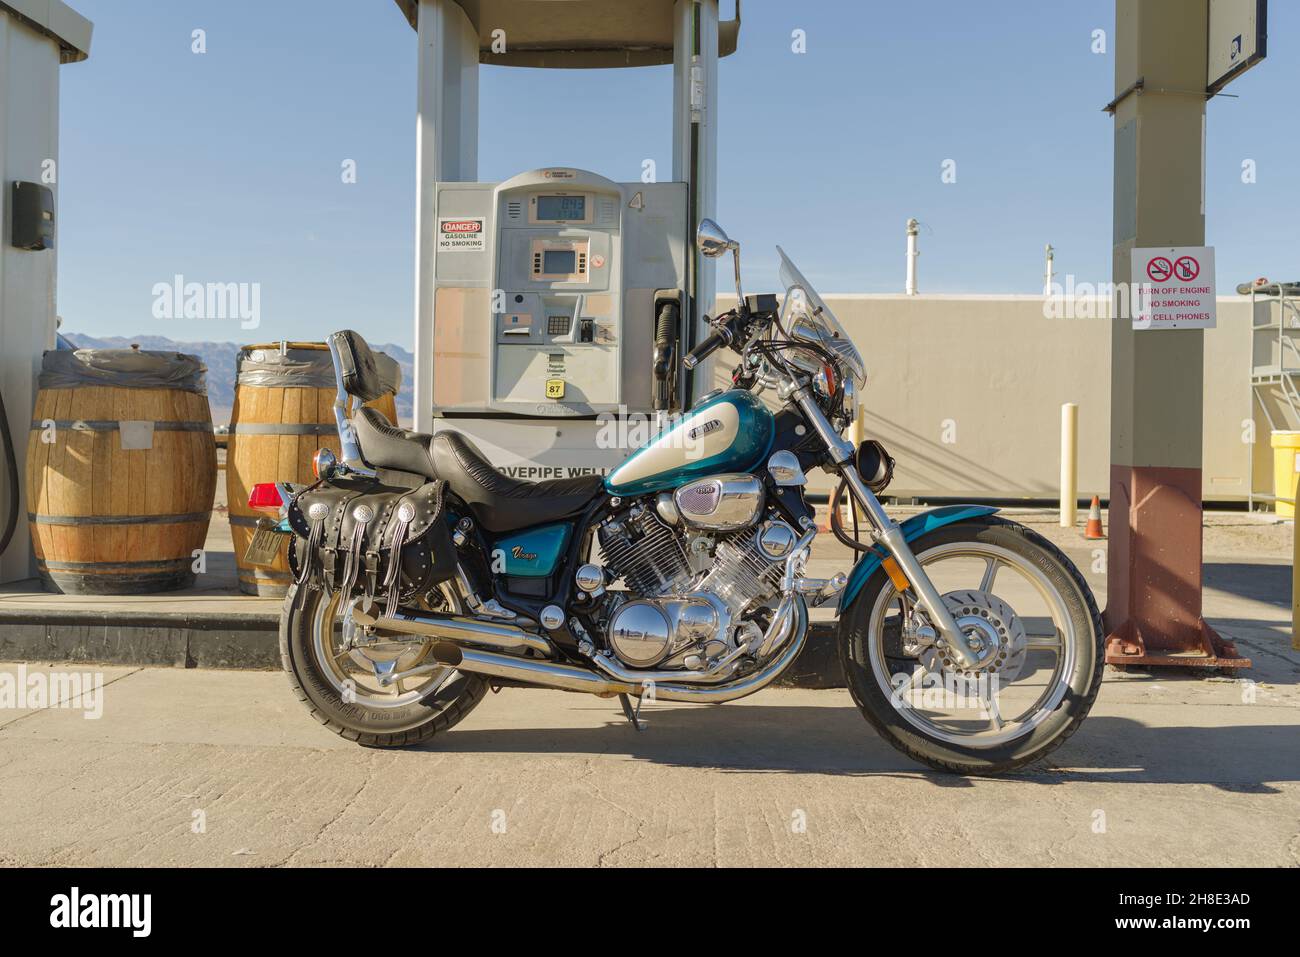 Moto Yamaha Virago 1994 présentée dans une station-service à Stovepipe Well, Death Valley, Californie. Banque D'Images